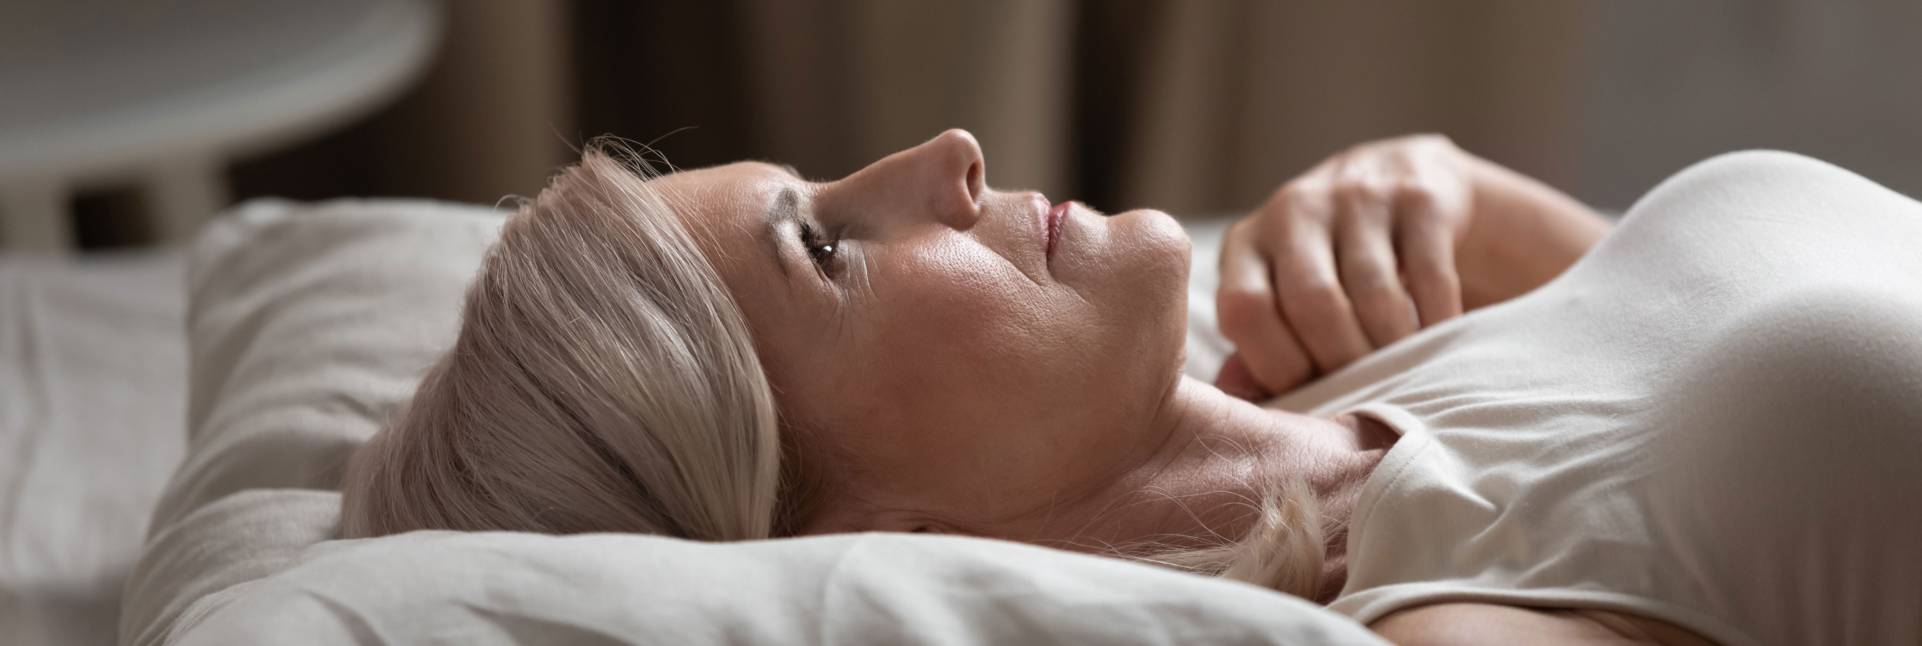 Insomnio en la menopausia: causas y tratamiento